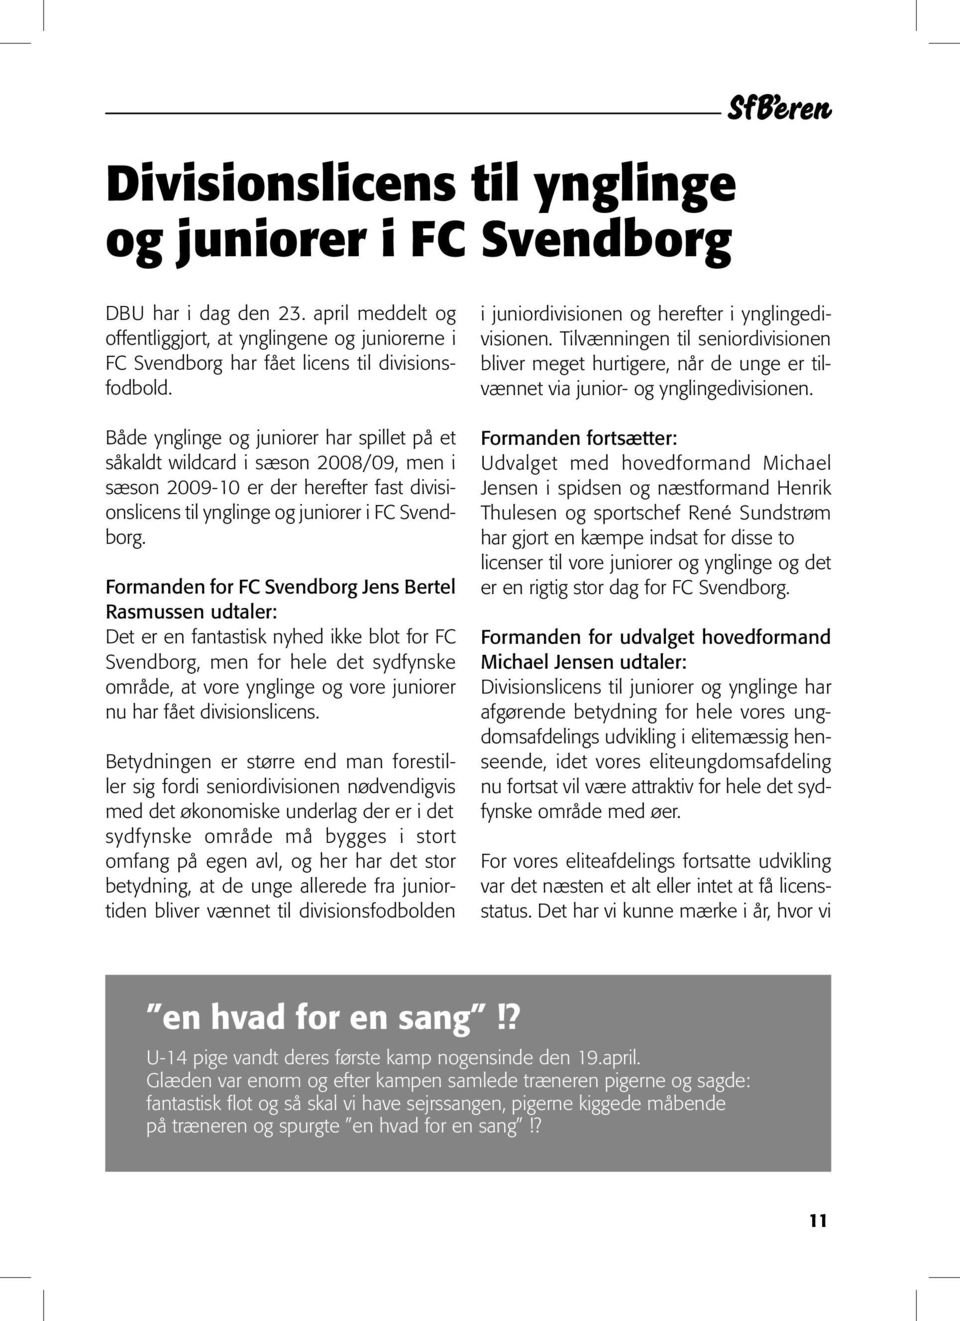 Formanden for FC Svendborg Jens Bertel Rasmussen udtaler: Det er en fantastisk nyhed ikke blot for FC Svendborg, men for hele det sydfynske område, at vore ynglinge og vore juniorer nu har fået